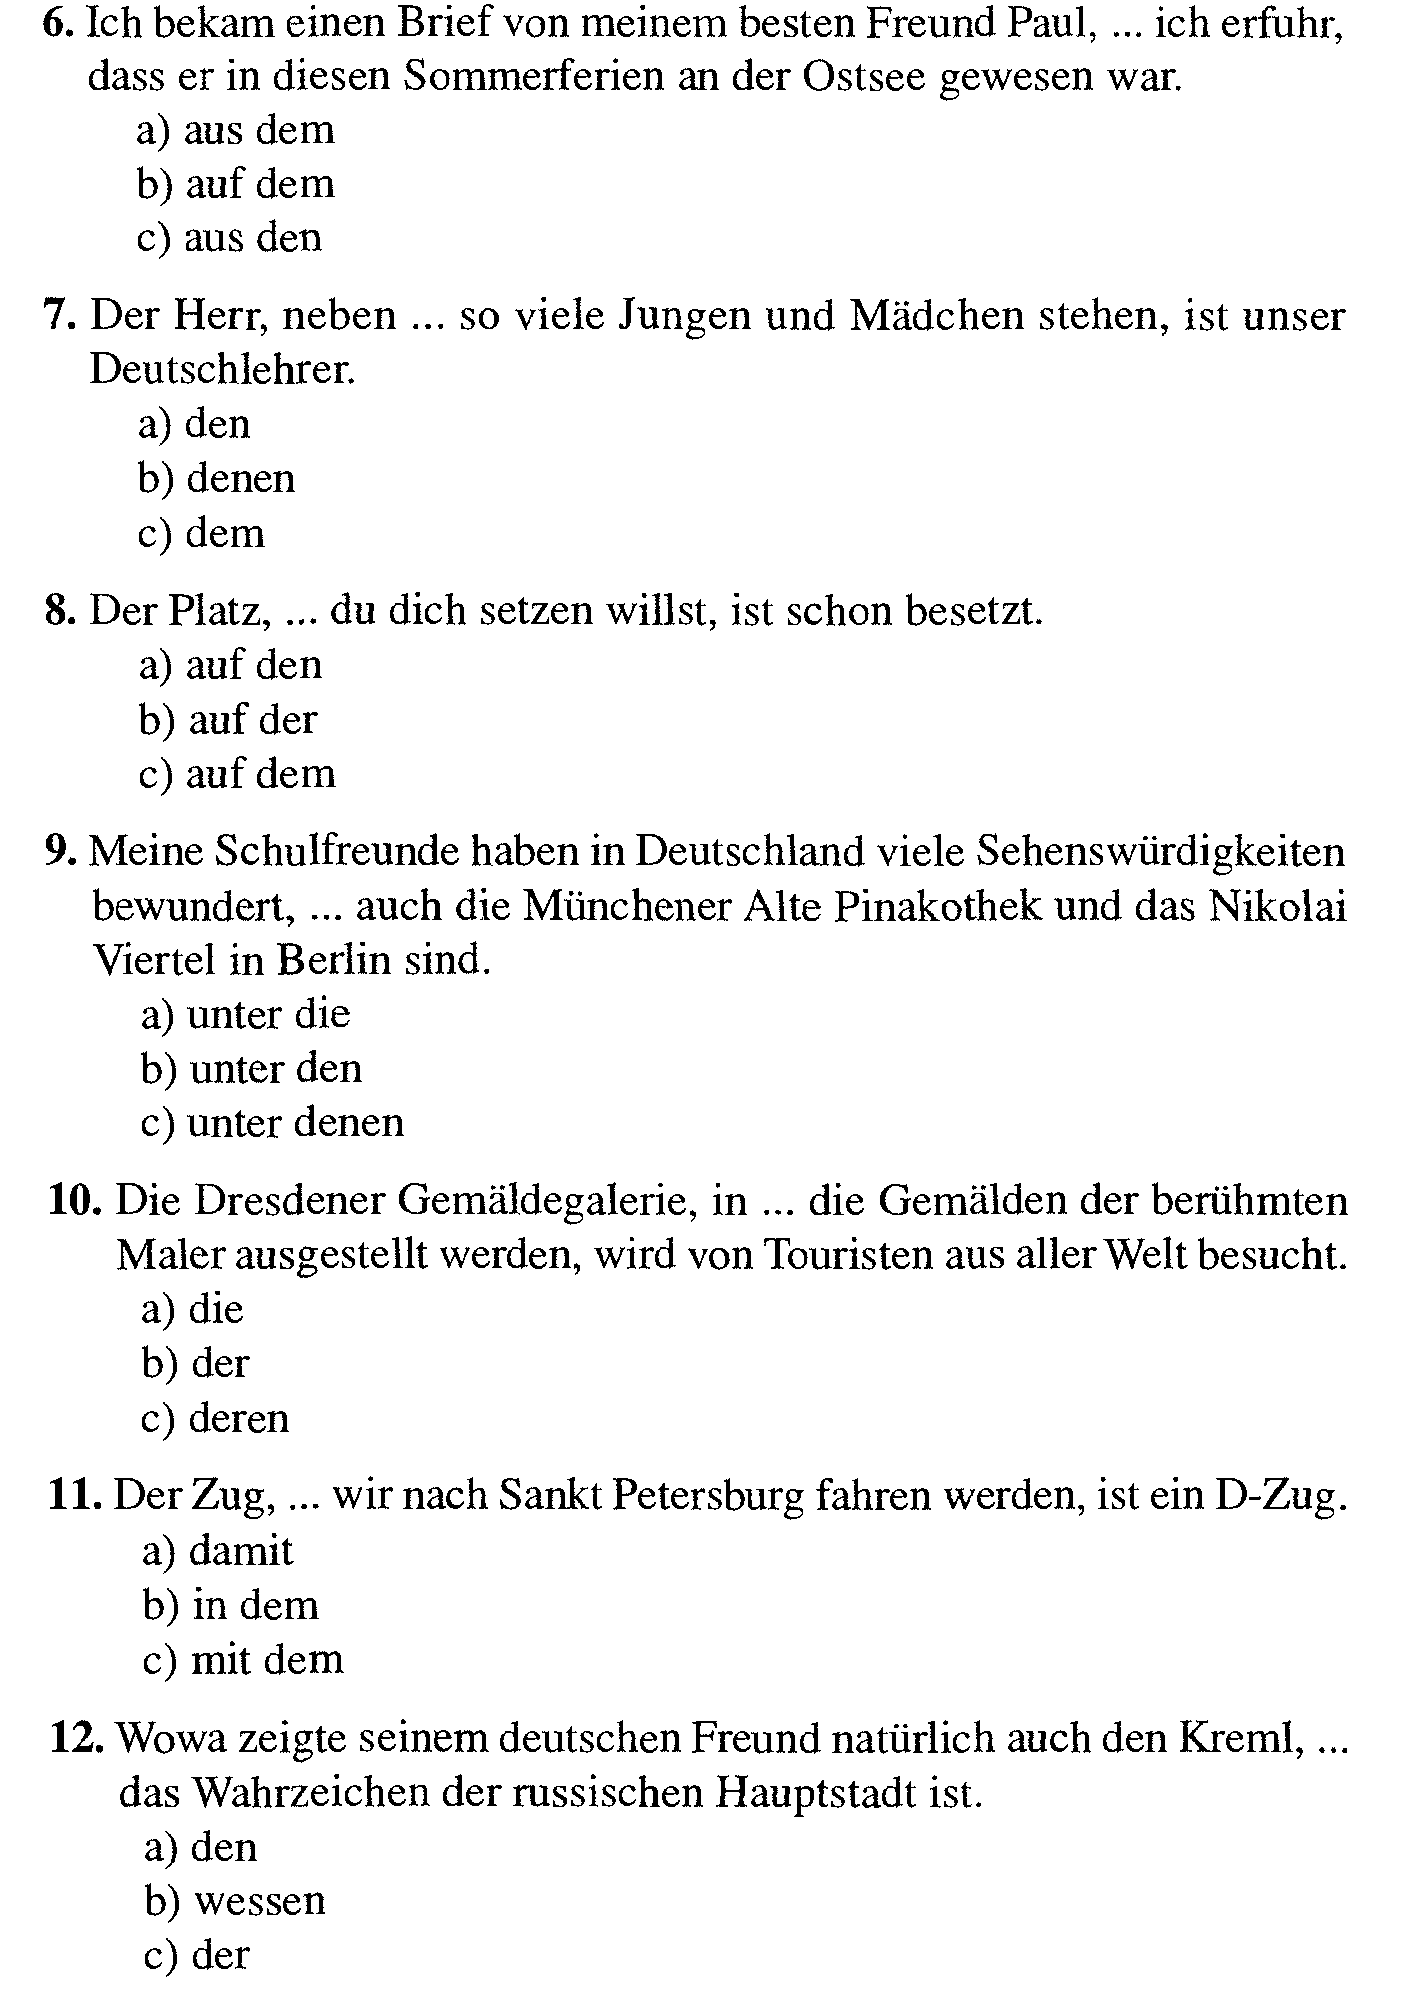 Тесты по немецкому языку для учащихся 11 класса общеобразовательной школы